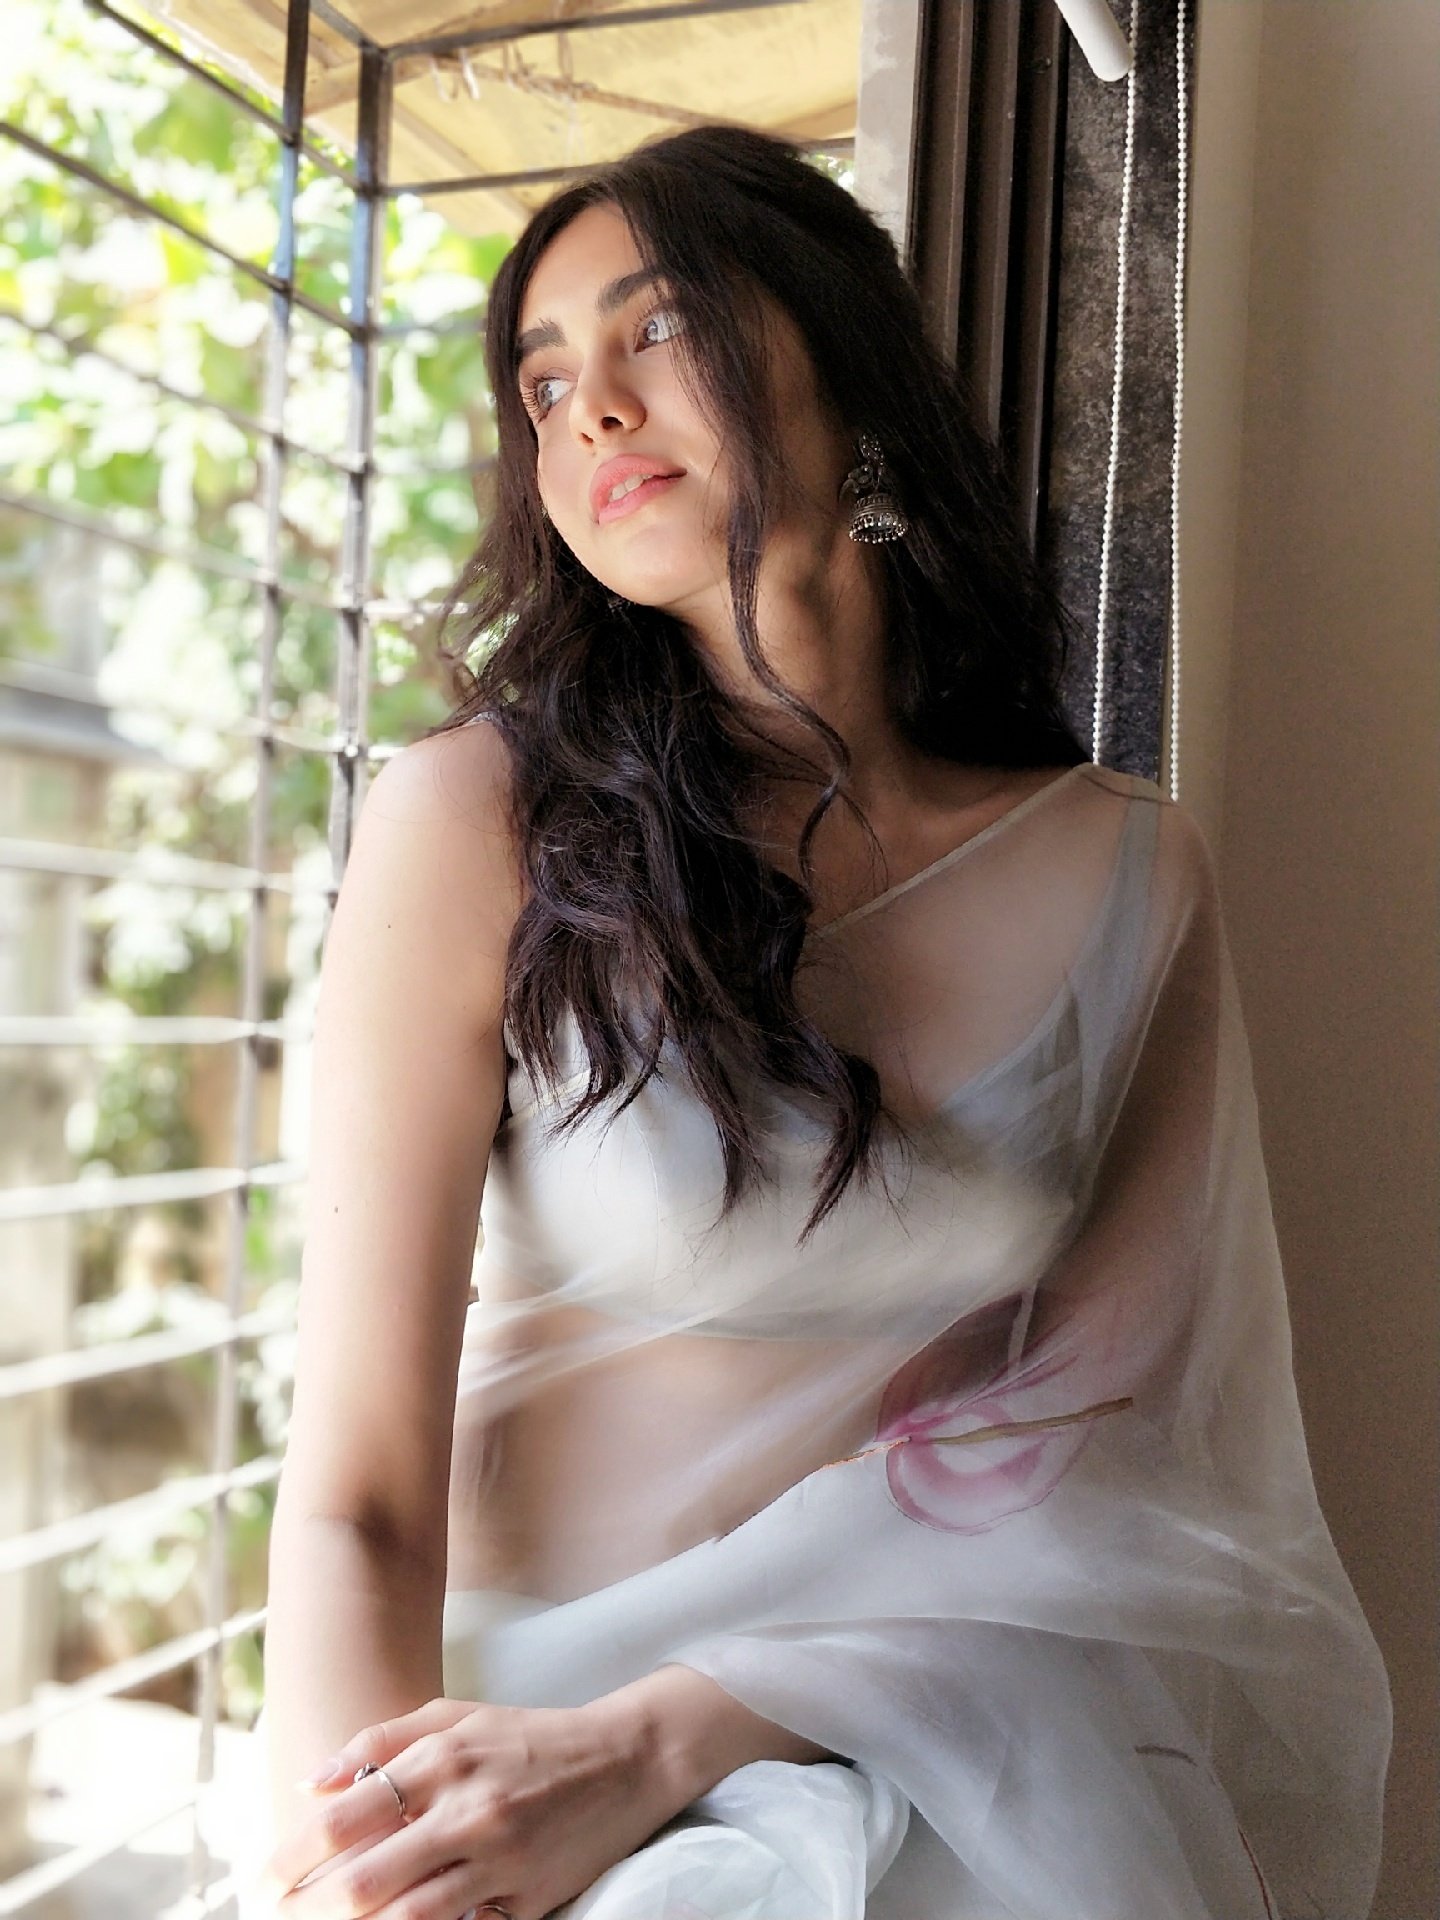 Latest Photos of Actress Adah Sharma | Cini Mirror